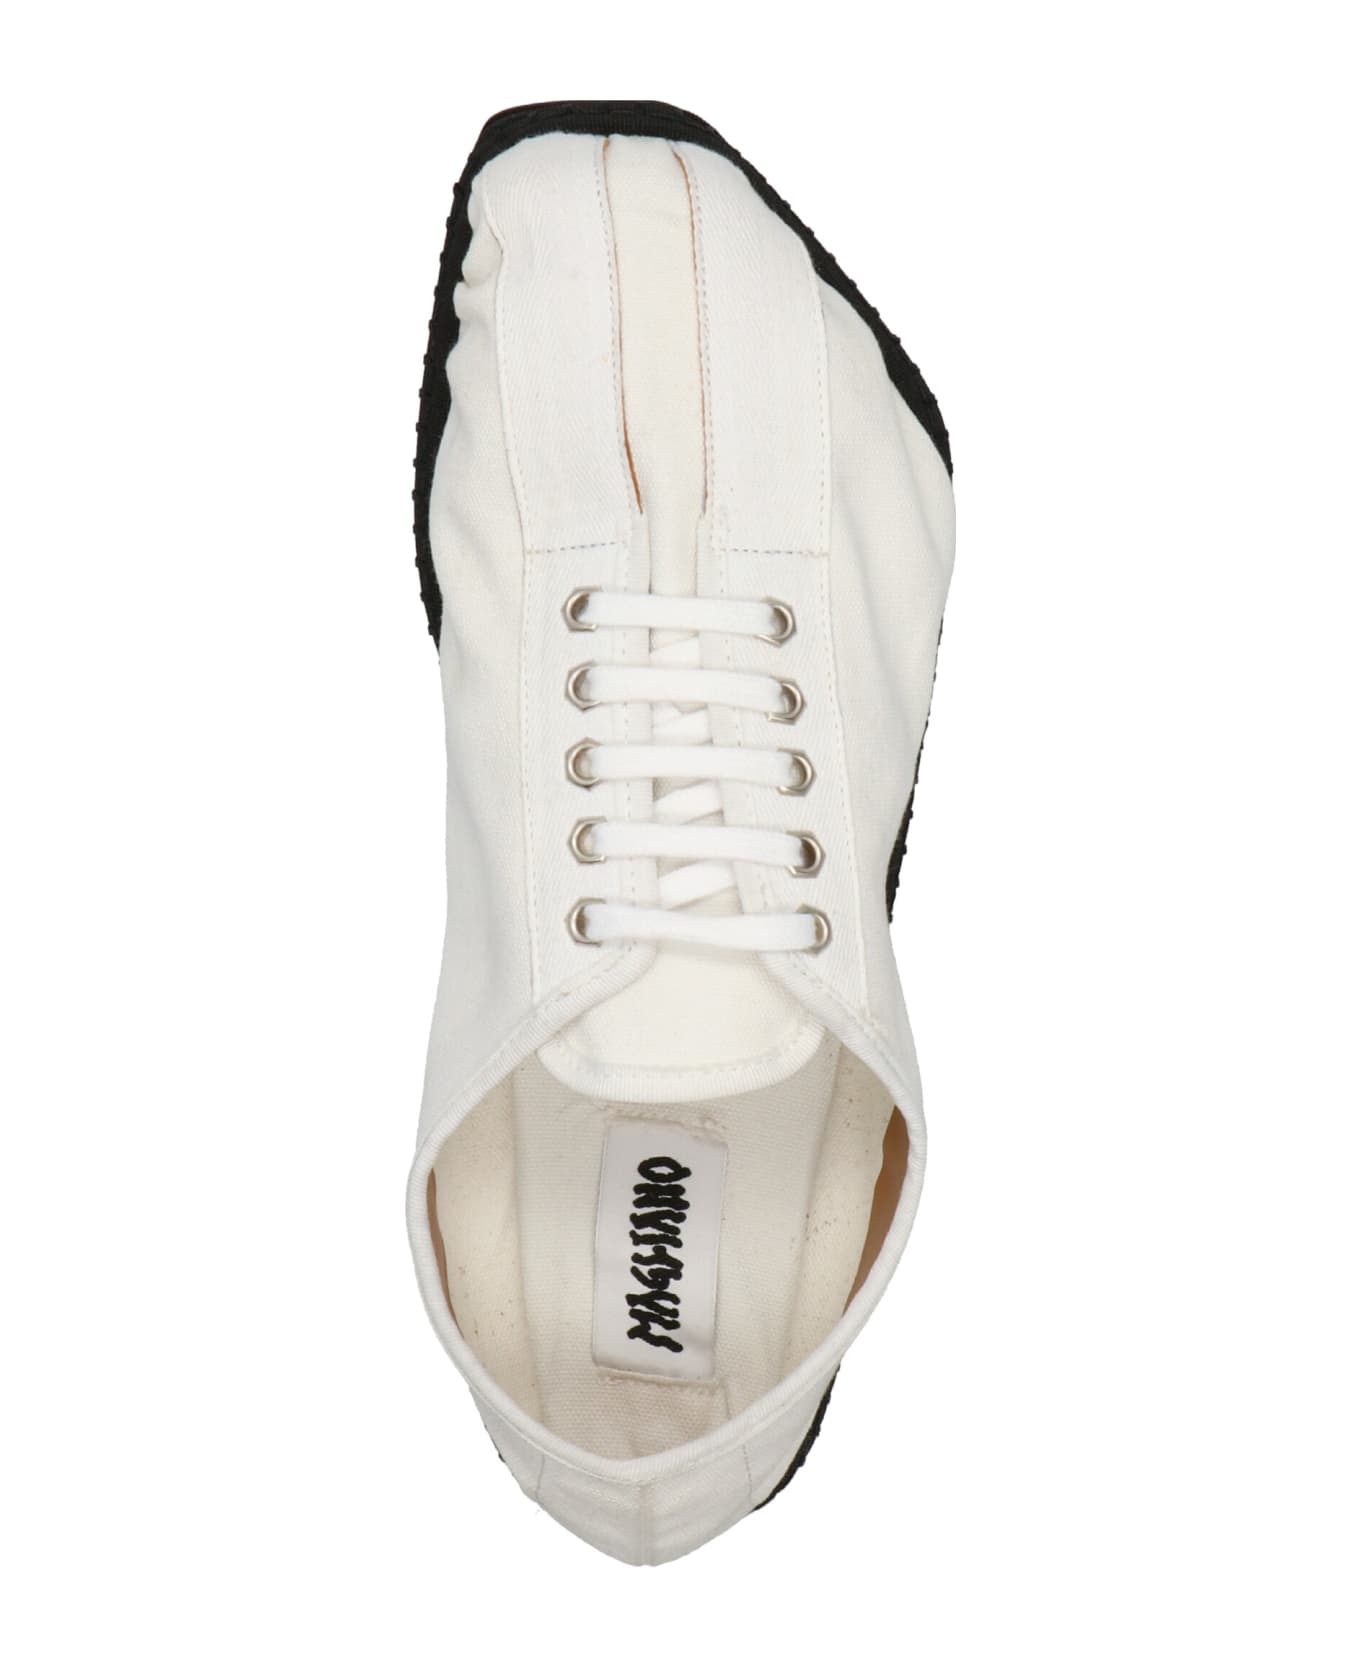 Magliano 'maglianillas' Lace Up Shoes - White